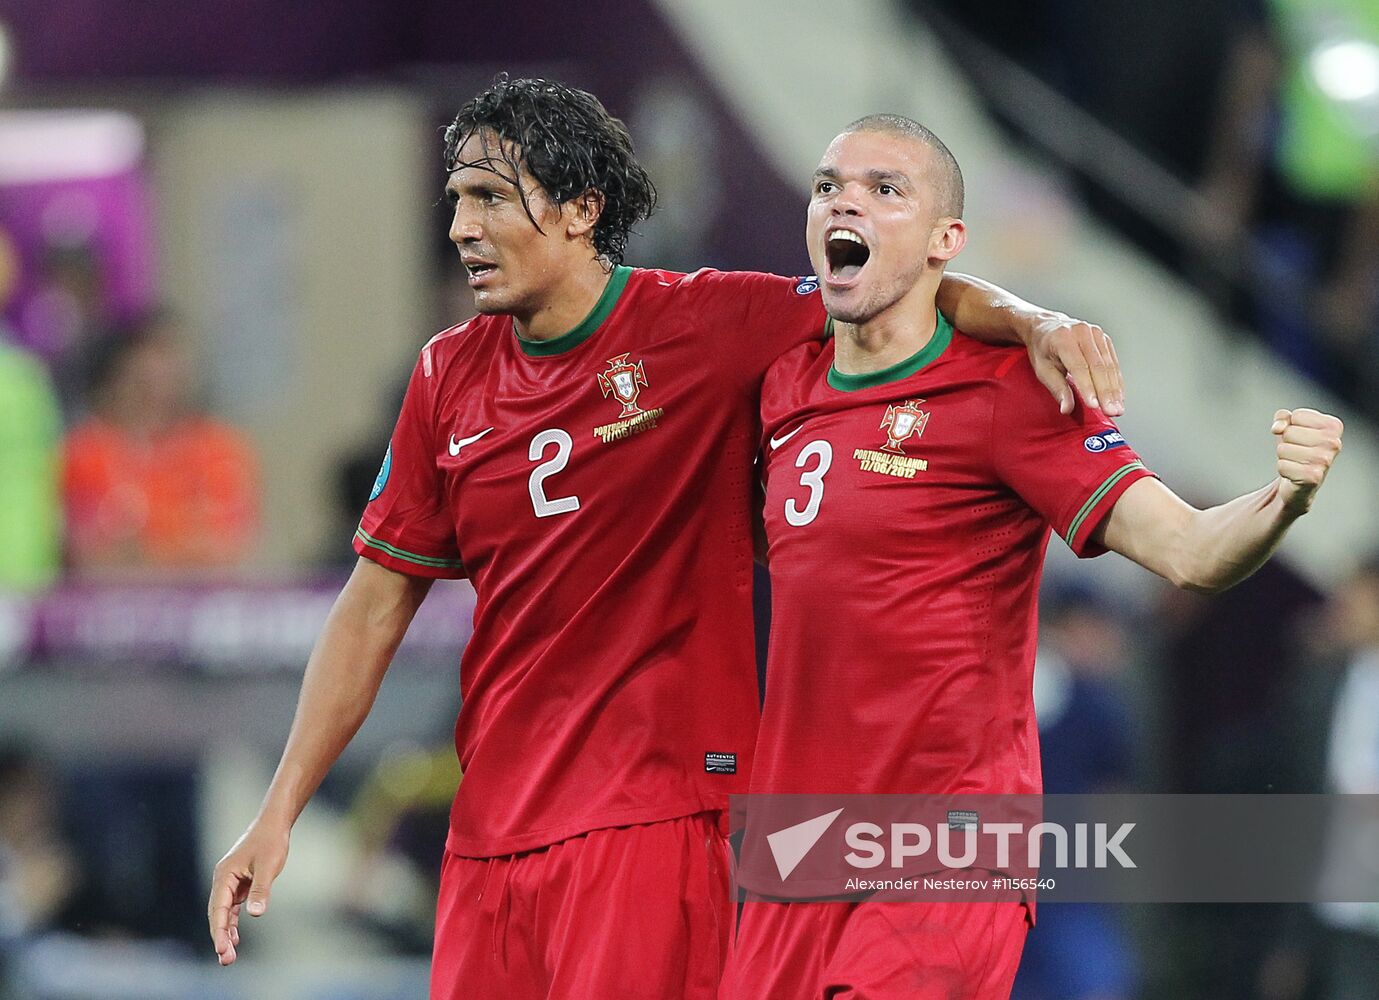 UEFA Euro 2012. Portugal vs. Netherlands